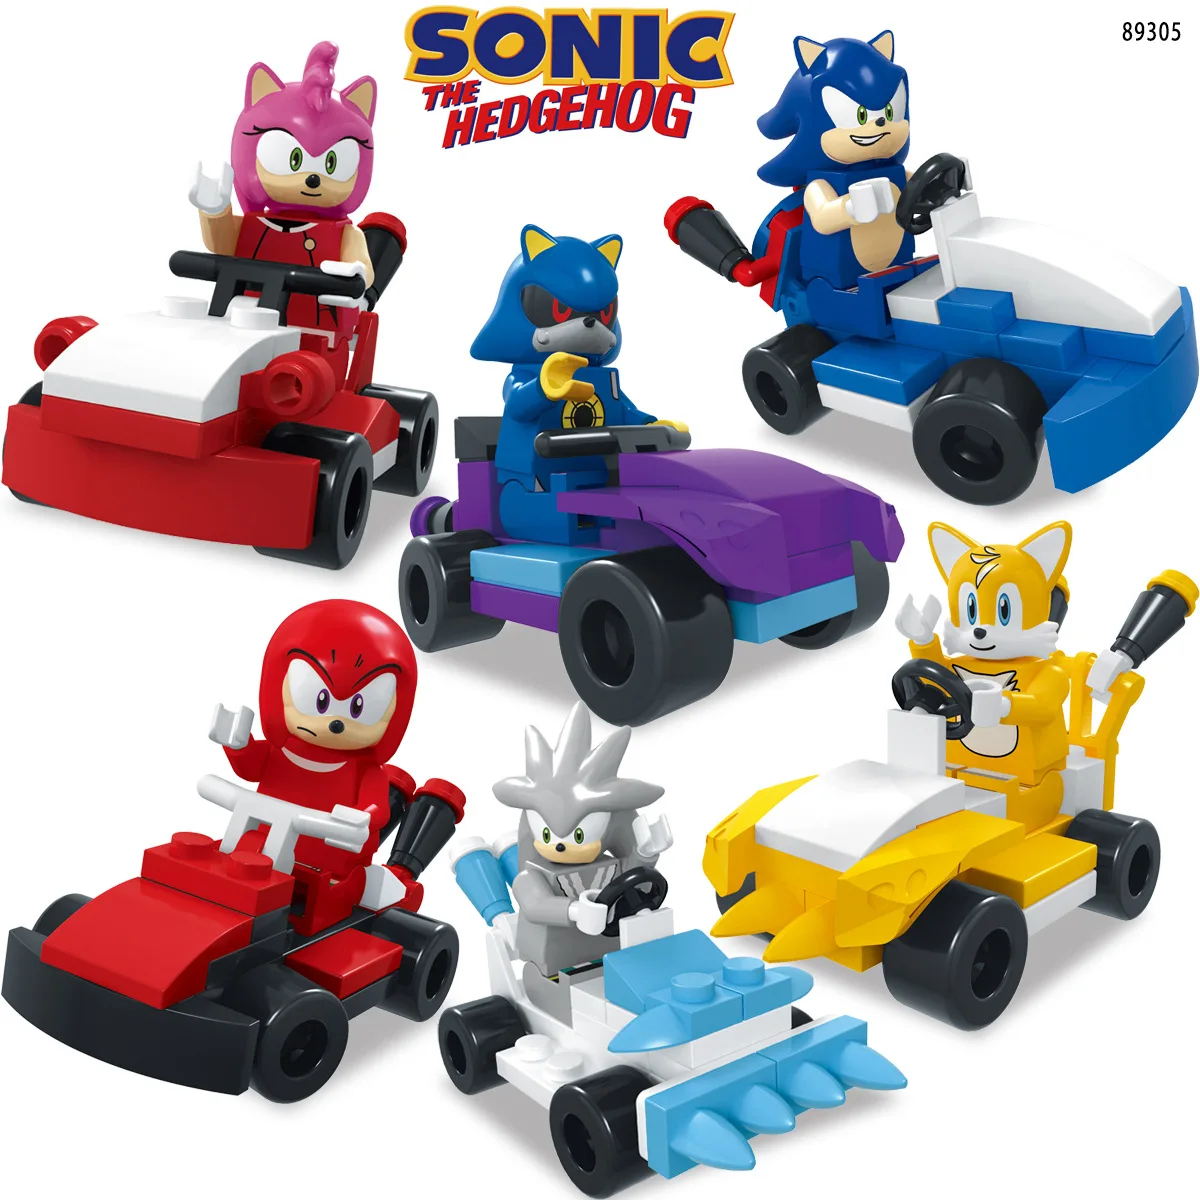 Sonic The Hedgehog Building Blocks Toy, Metal Model Brick, Boneca Montar,  Presente de aniversário, Desenhos animados, Marios, Caudas, juntas, Amy,  Rosa - AliExpress